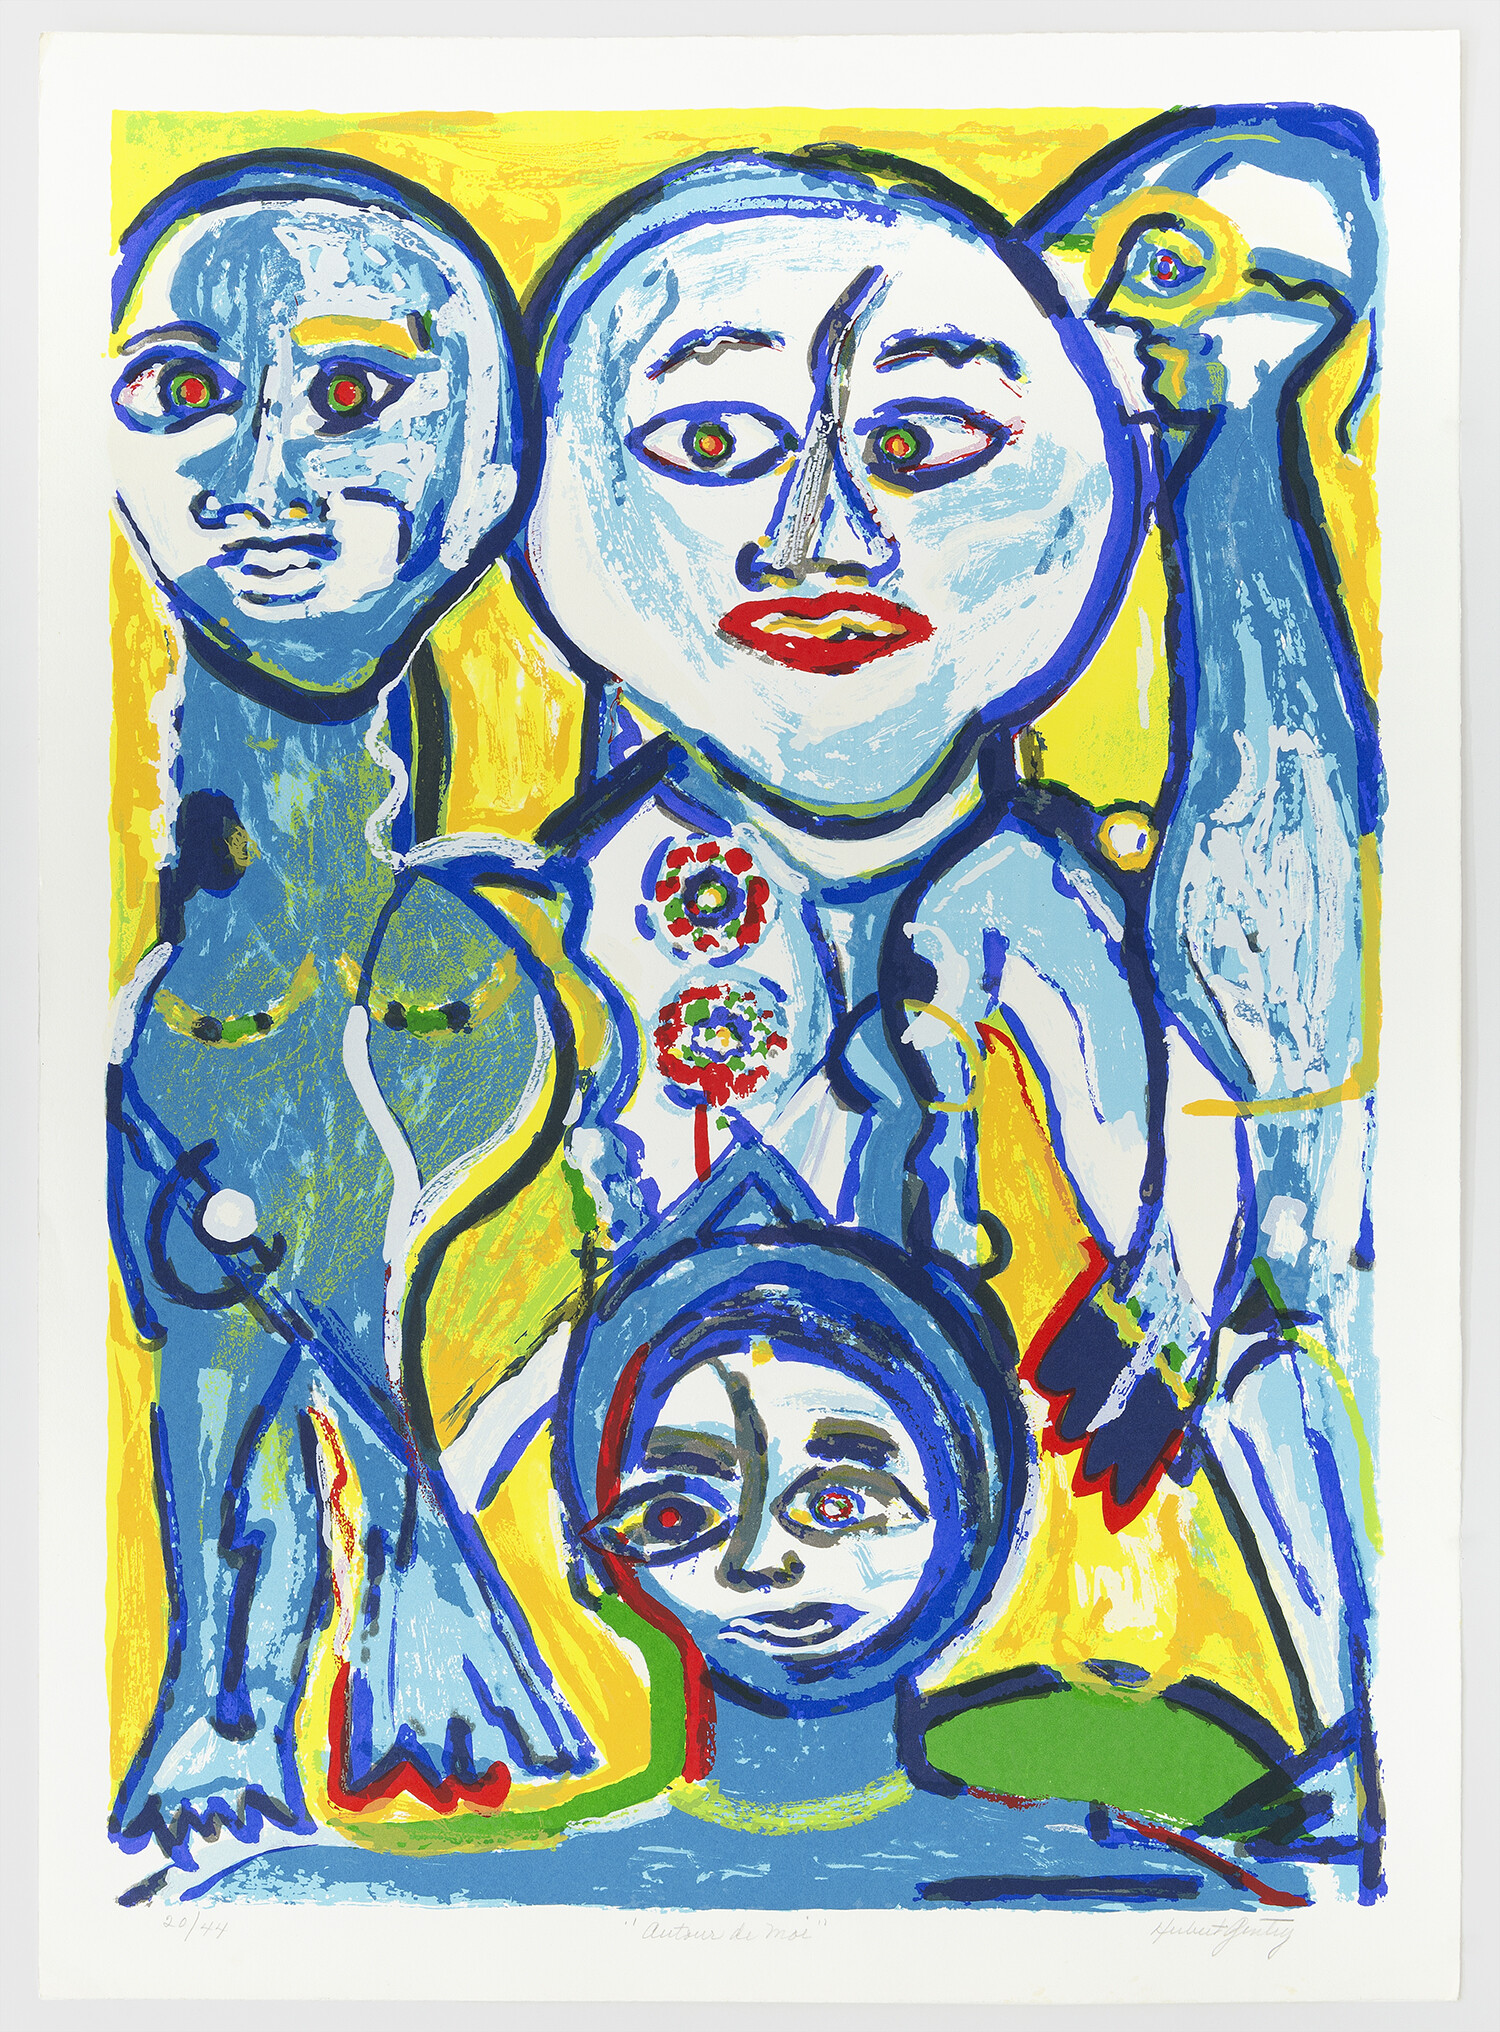 Today and Tomorrow (Auteur de Moi), 1983, Silkscreen, 32 1/4 x 23 1/4 inches (81.9 x 59.1 cm), Edition of 44